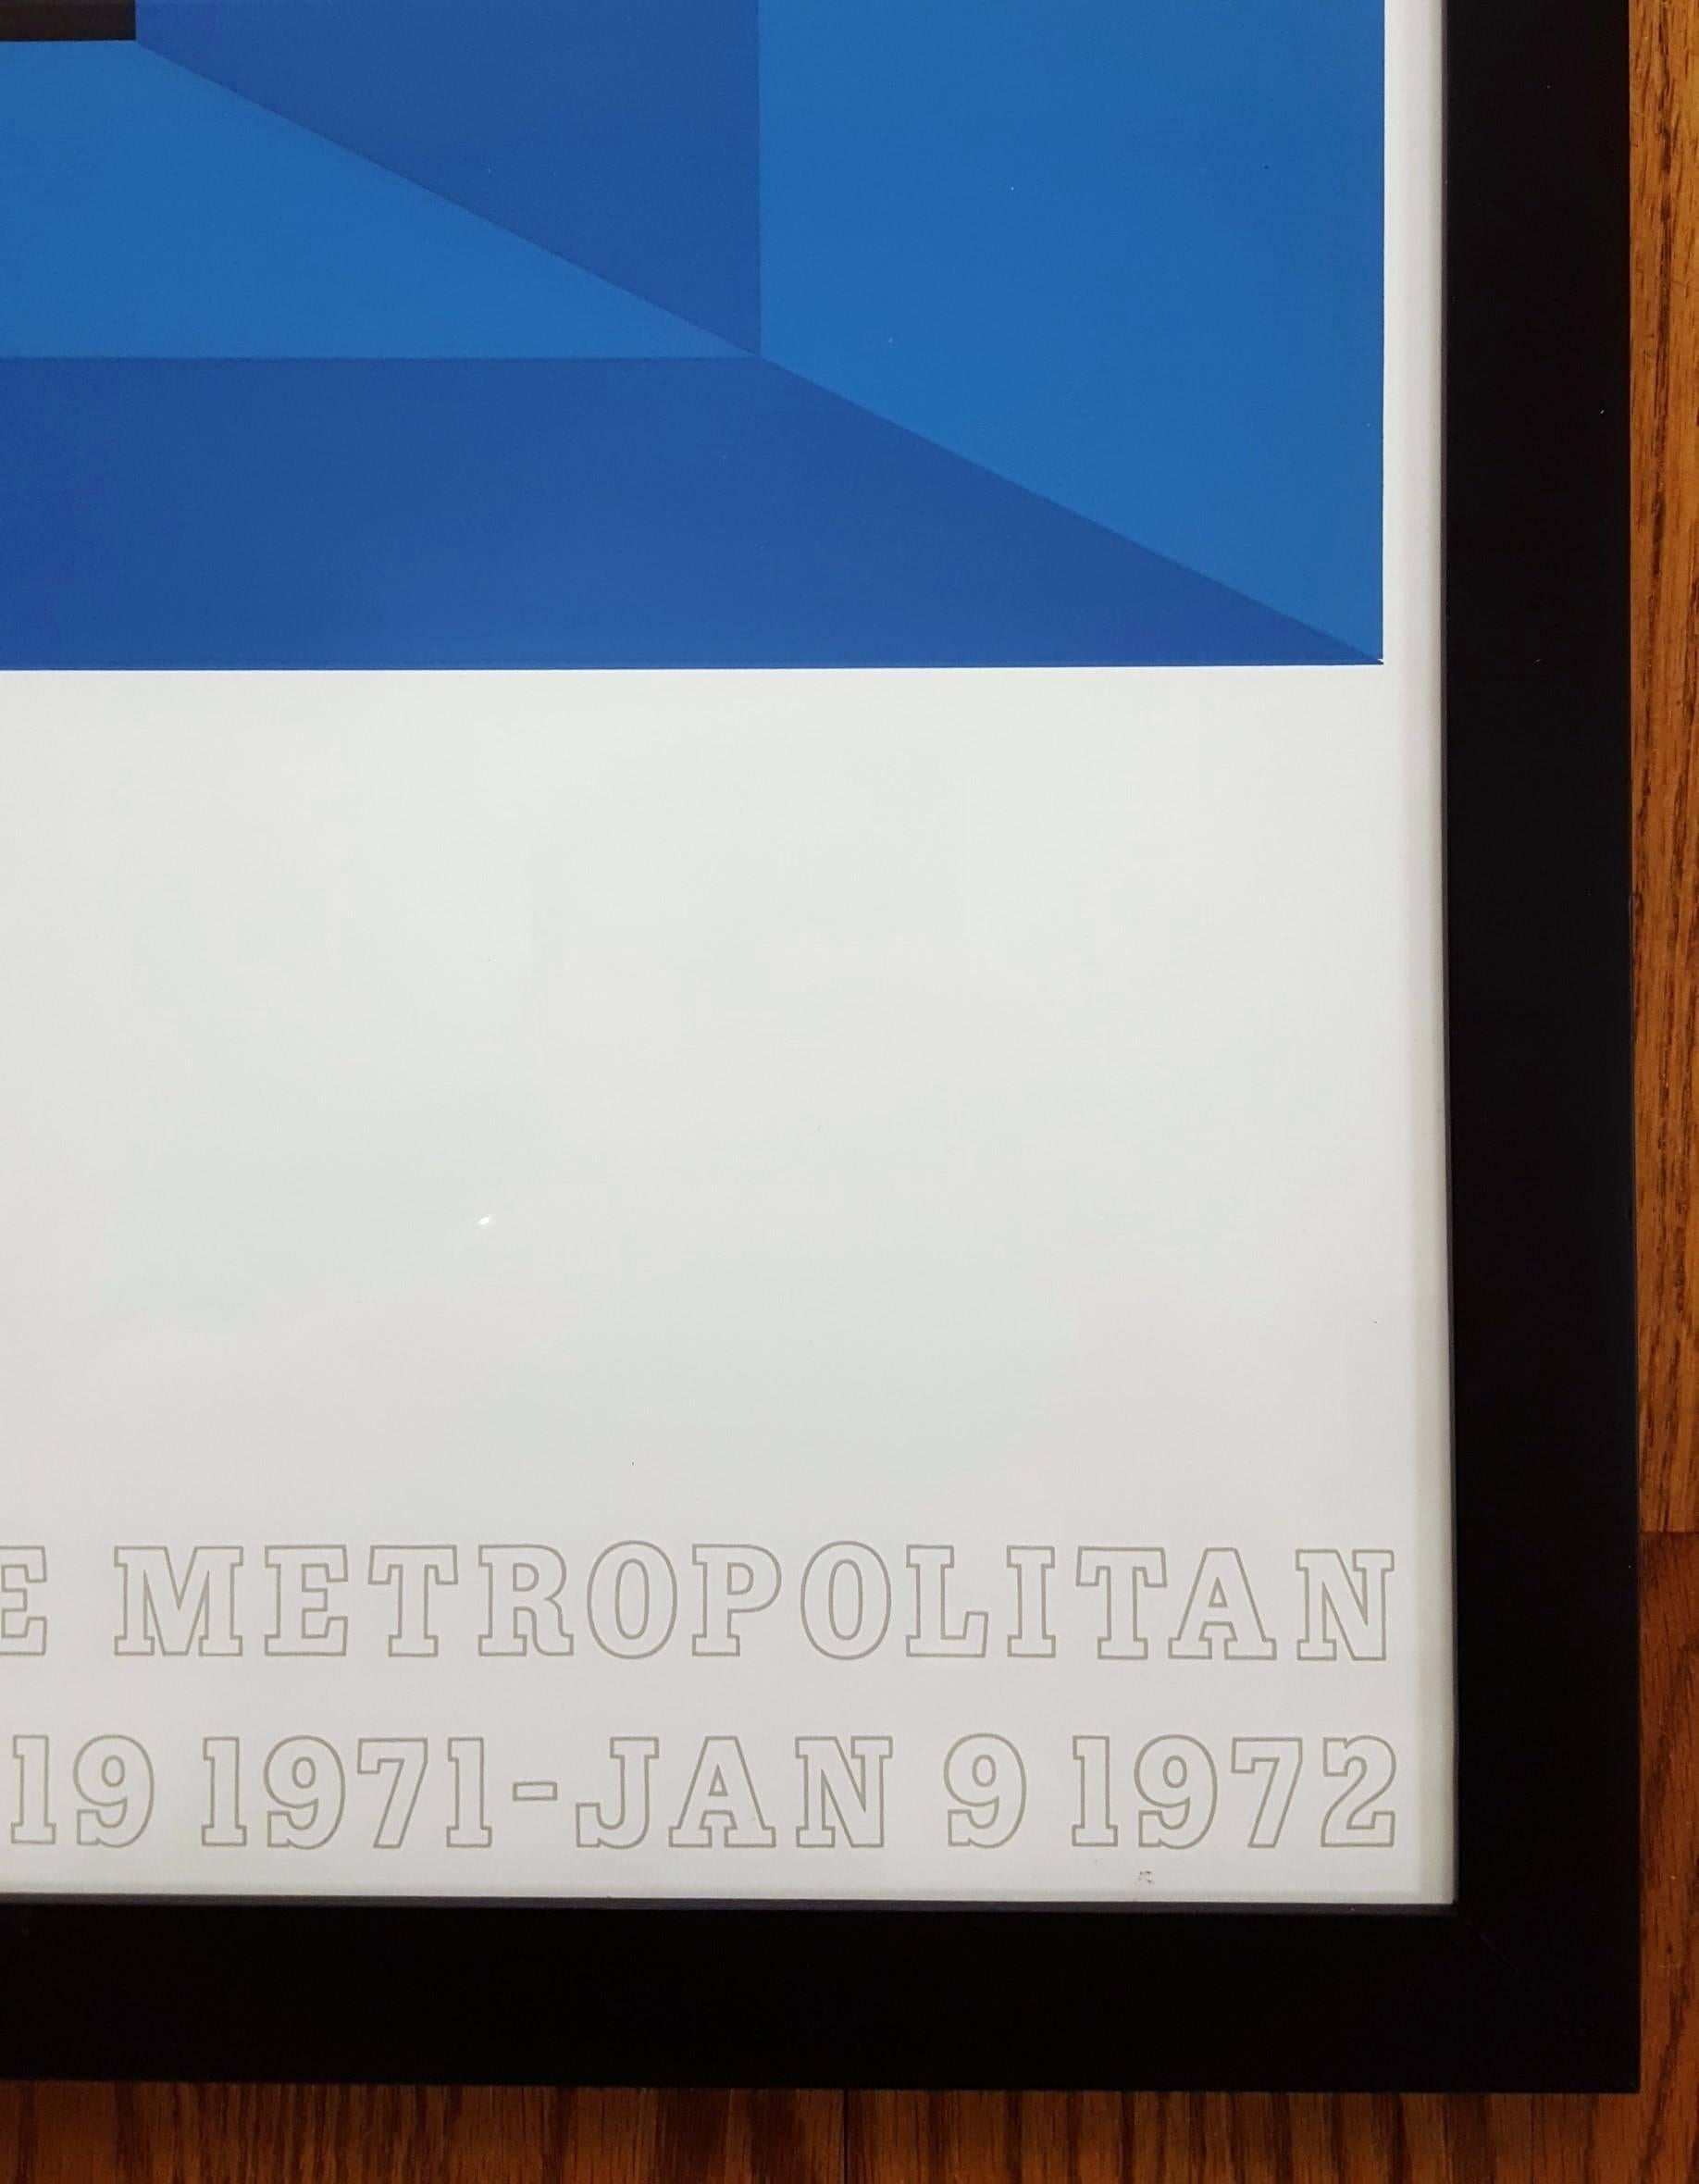 Josef Albers at the Metropolitan Museum of Art 1